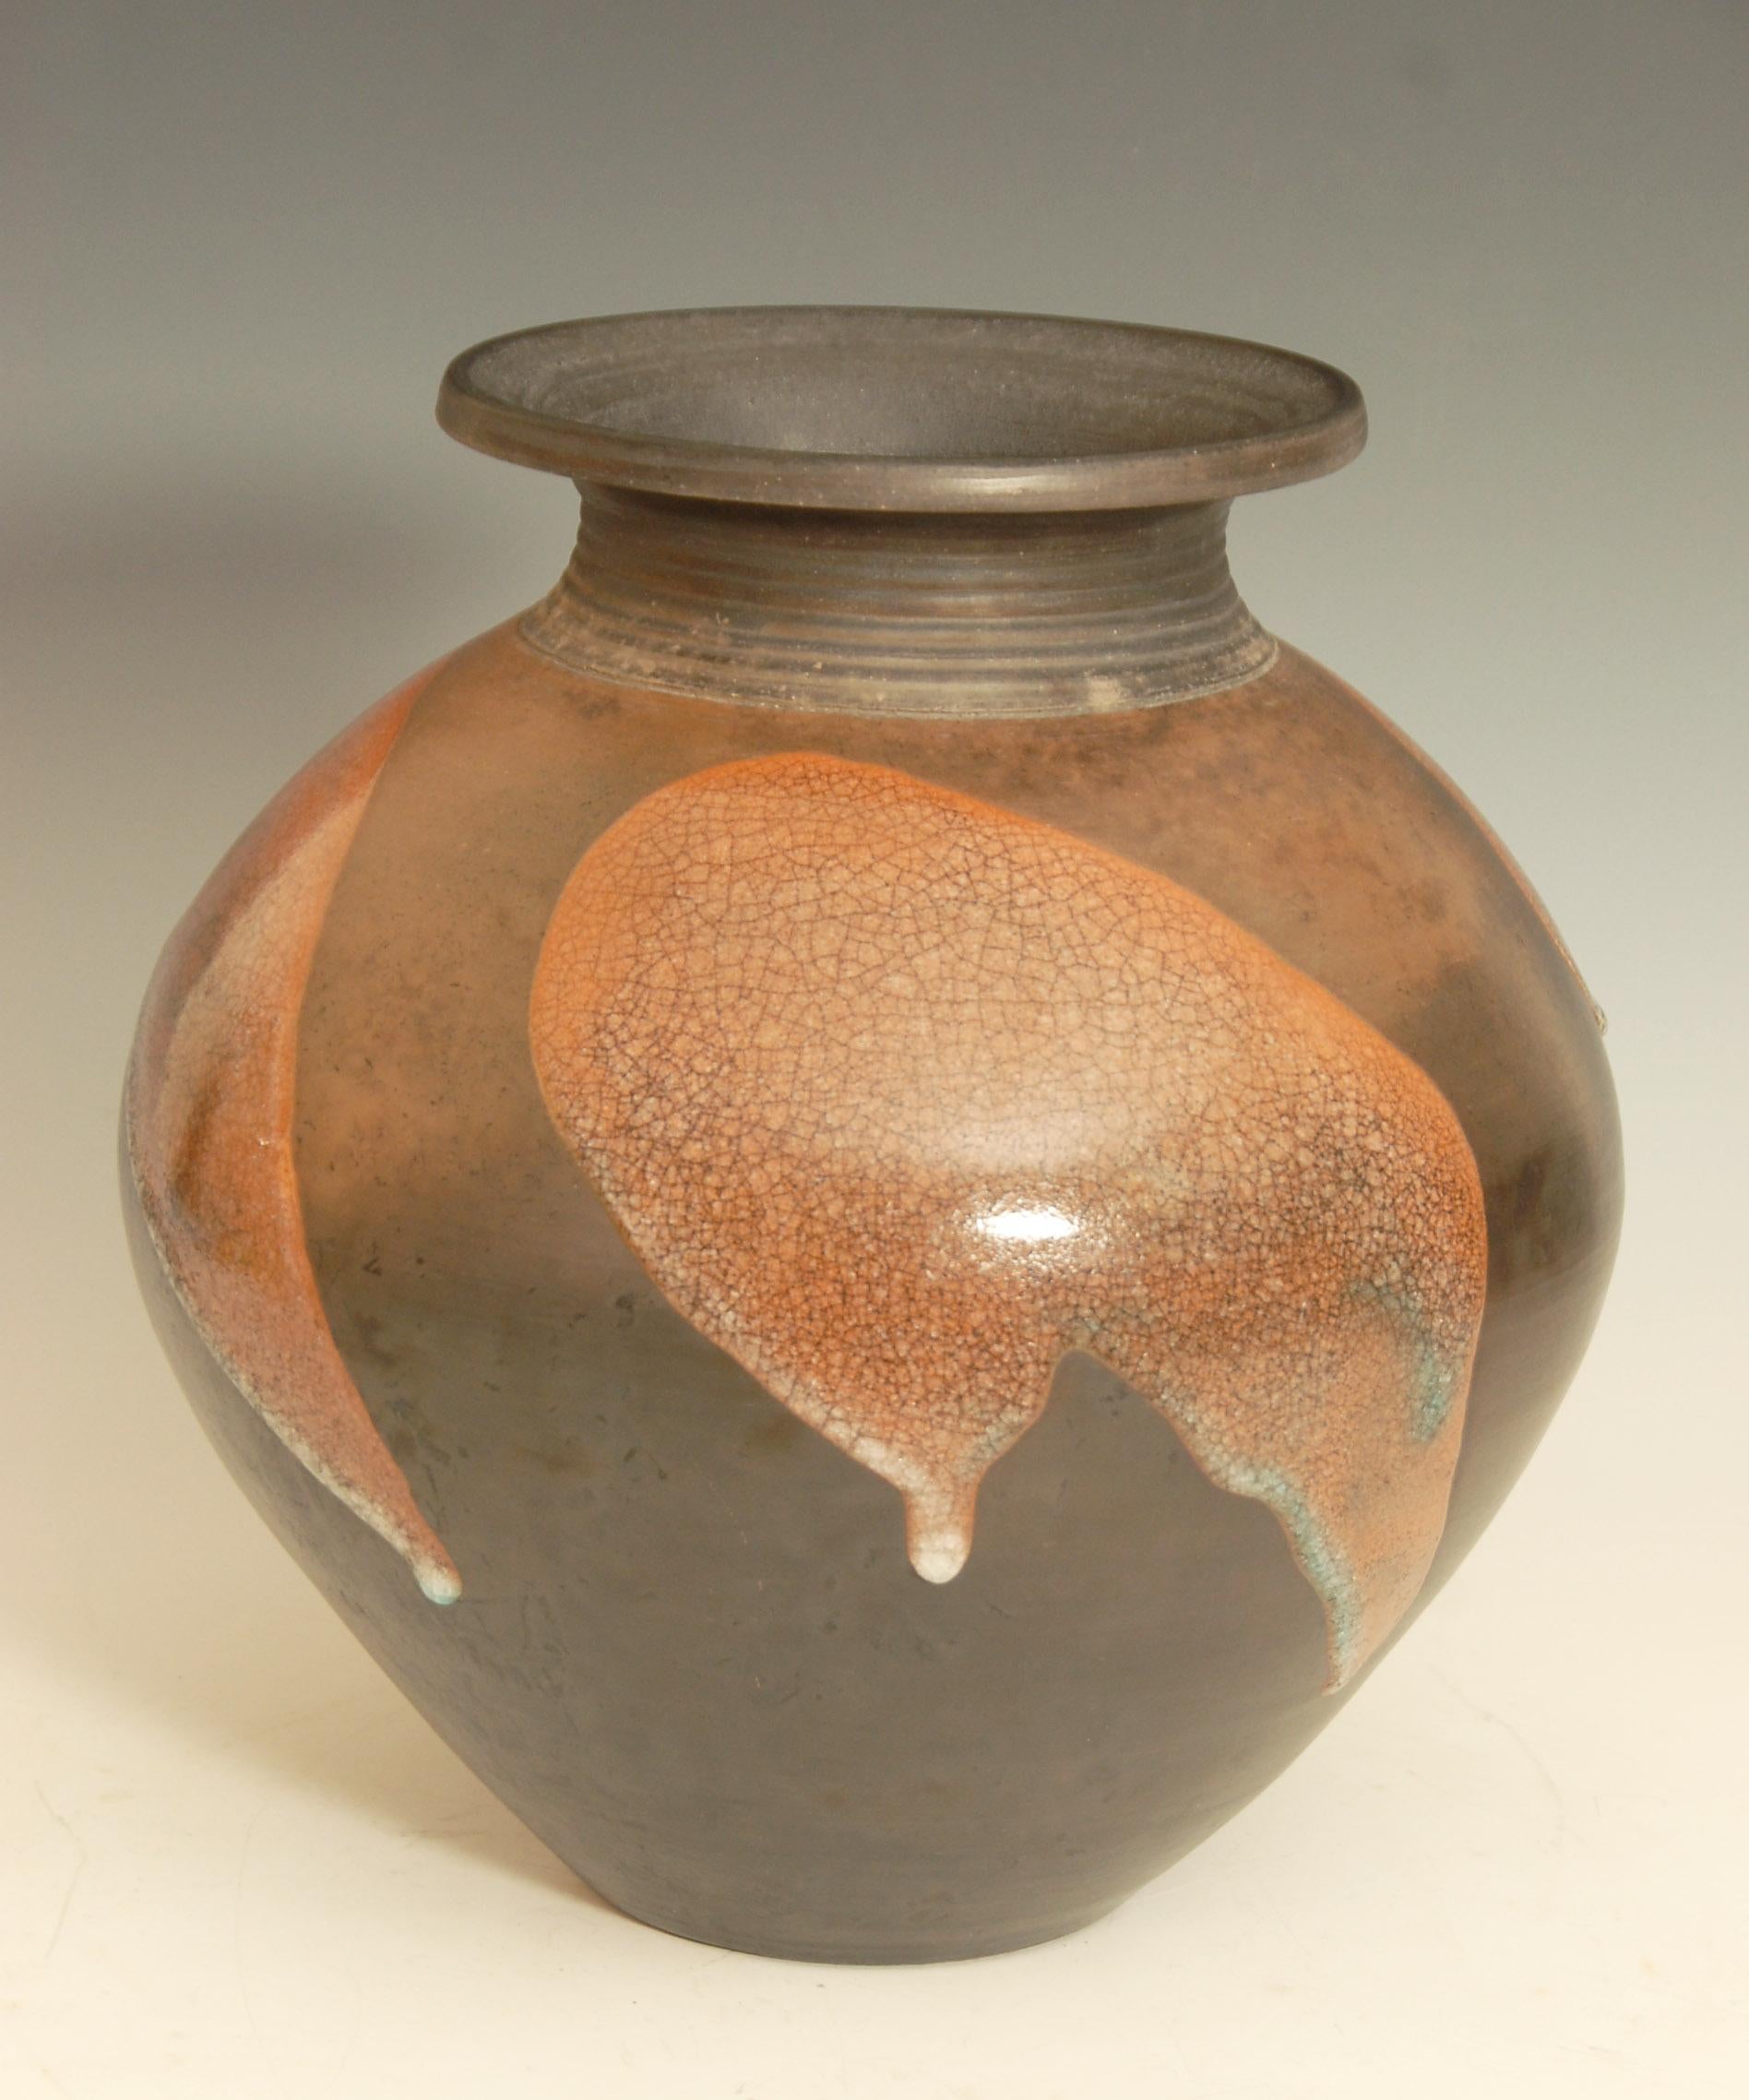 Large Burnished Raku Pot or Vase with Crackle Glaze by Tim Andrews UK For Sale 1